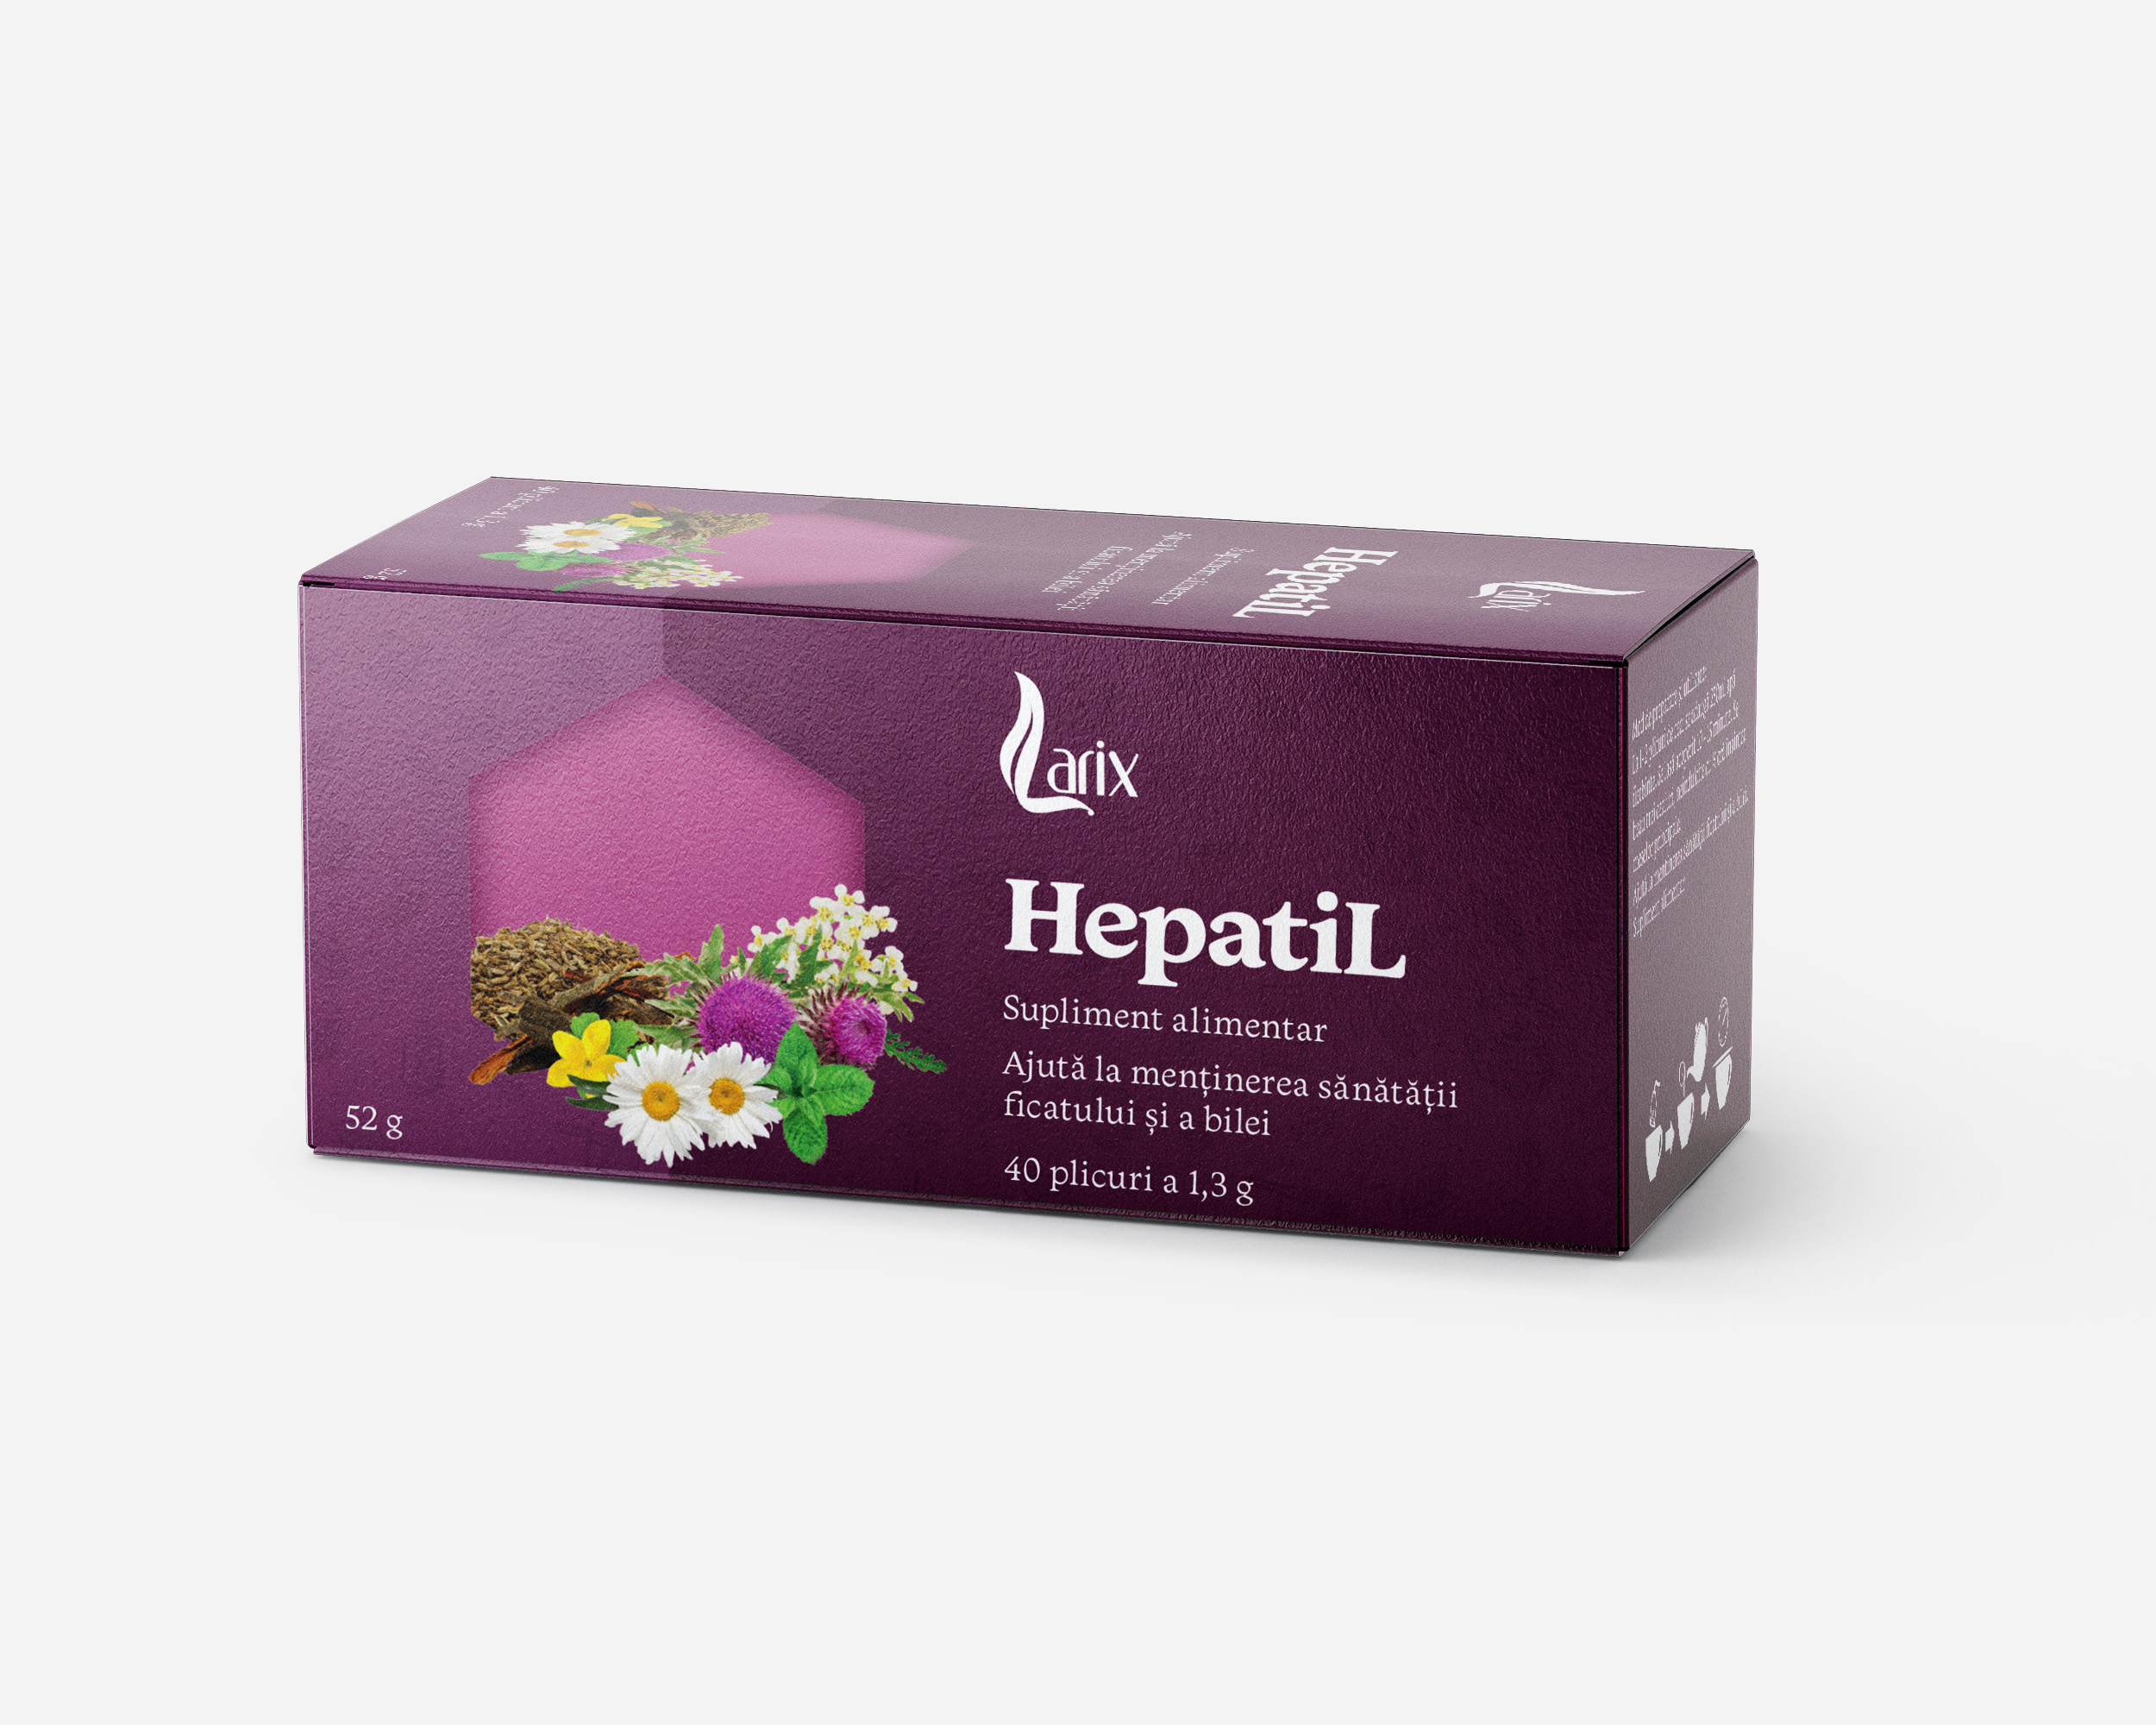 Ceaiuri - CEAI HEPATIL * 40 PLIC LARIX, farmacom.ro